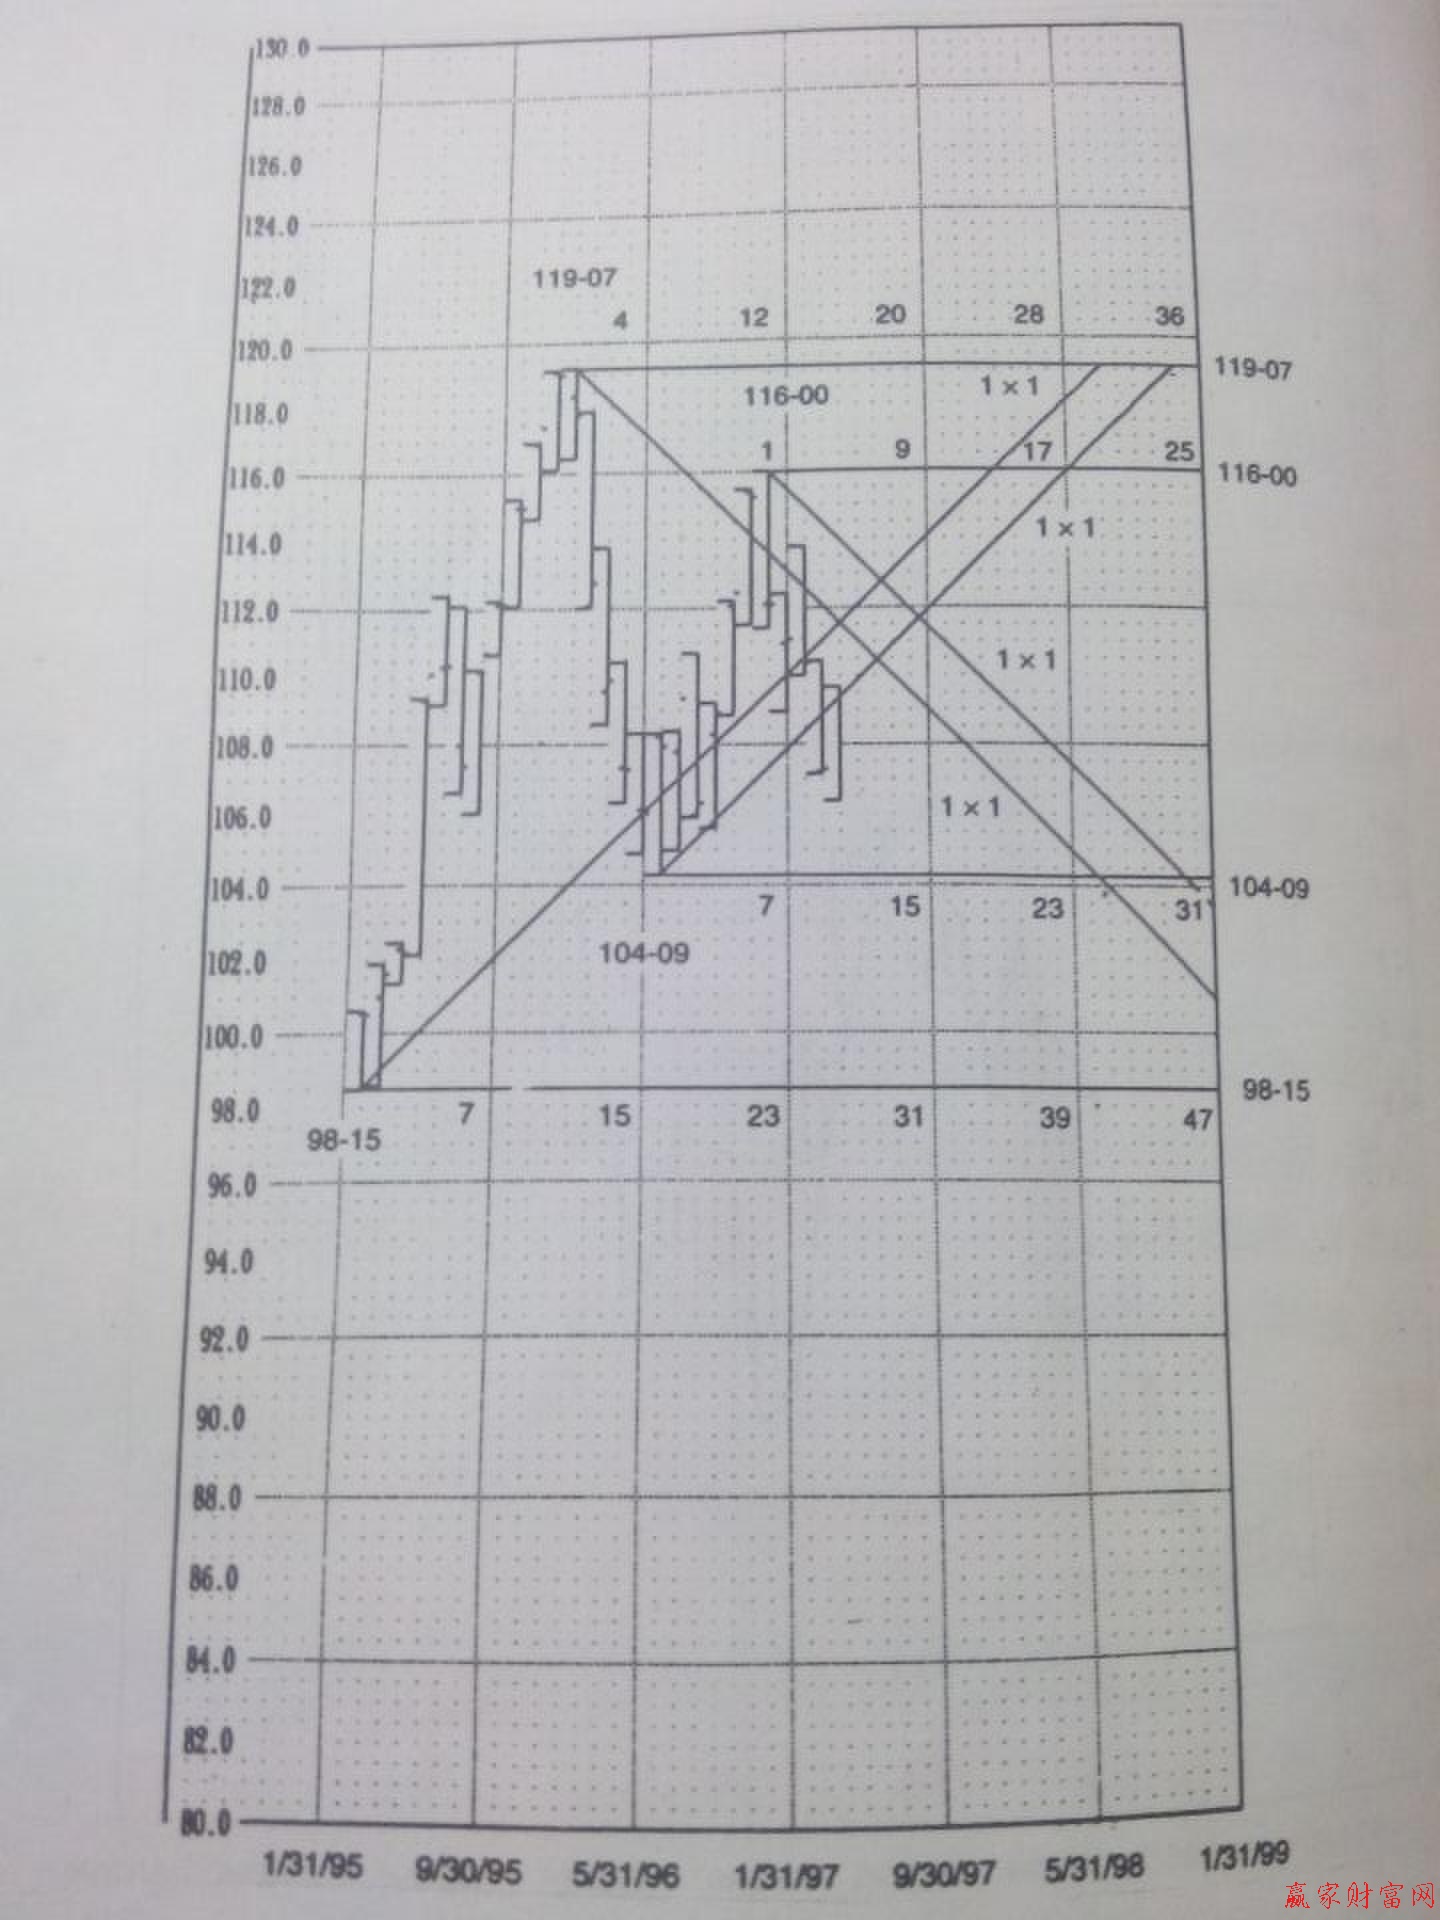 在画江恩角度线时,必须确定正确的刻度,否则时间和价格就是错误的.